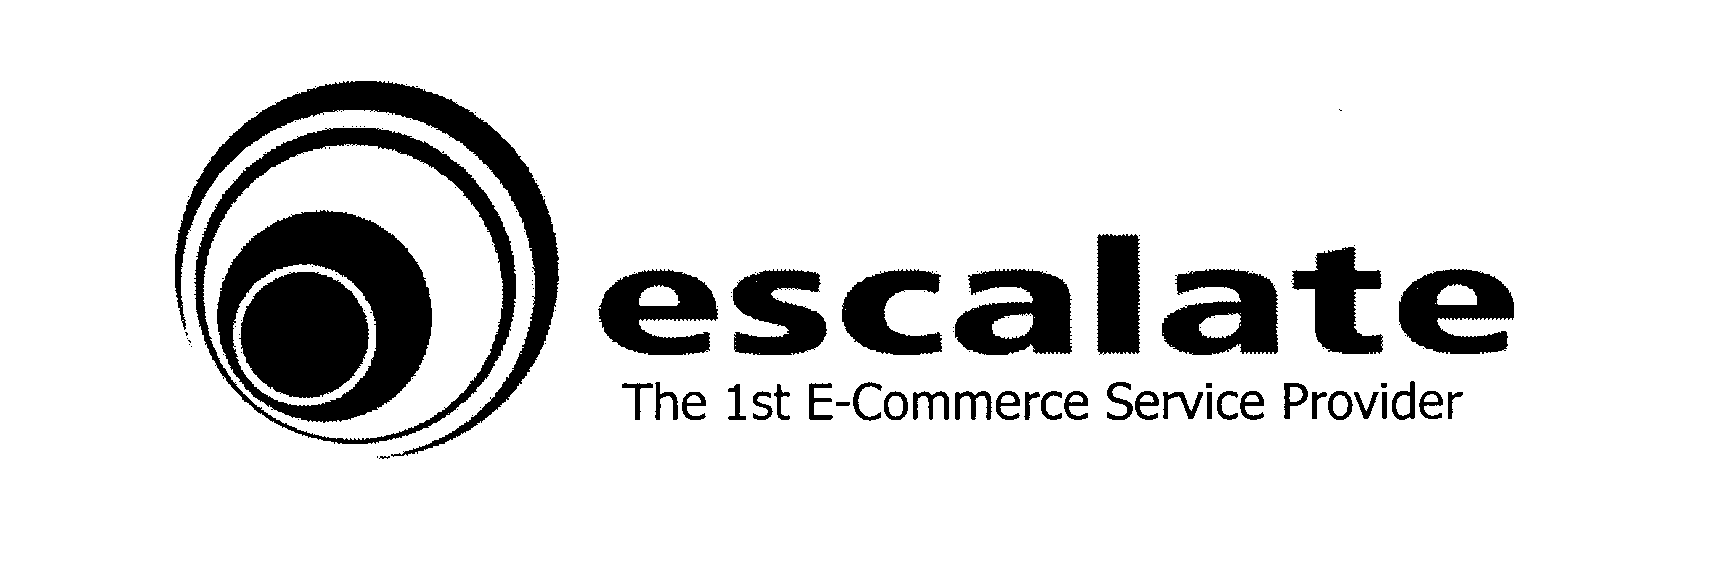  ESCALATE THE 1ST E-COMMERCE SERVICE PROVIDER